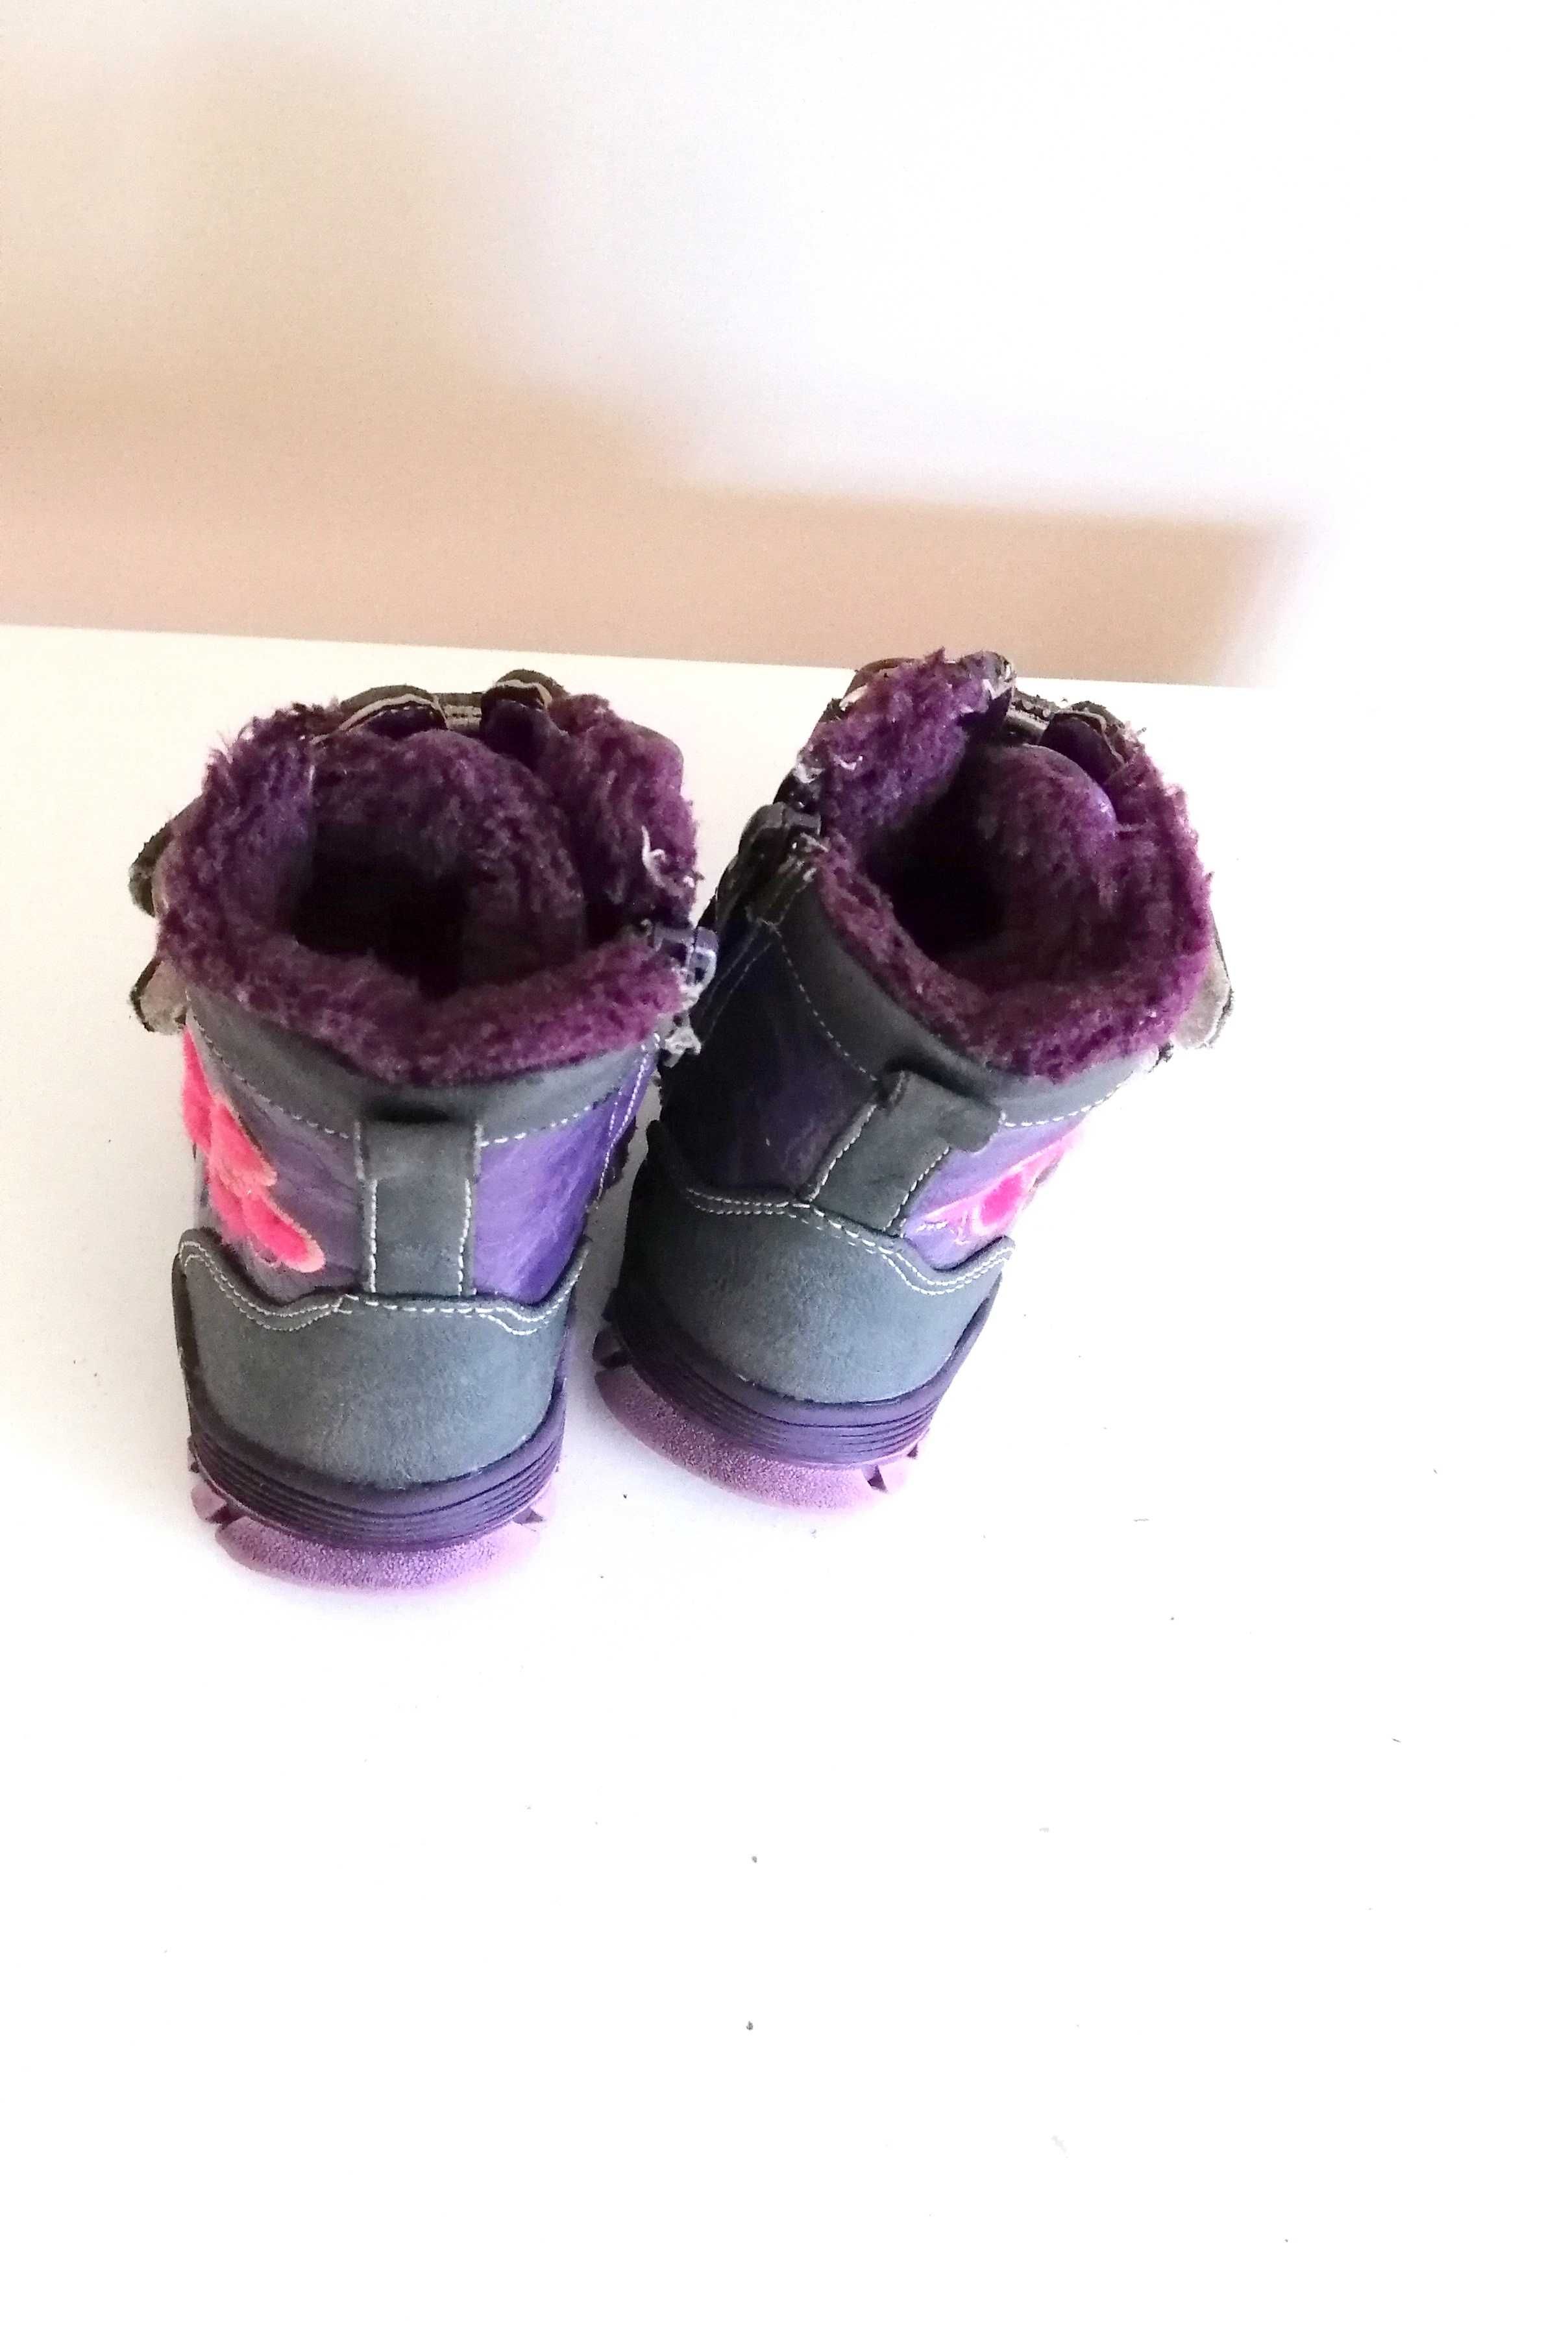 granatowe fioletowe buty na zimę zimowe kozaki dla dziewczynki 22